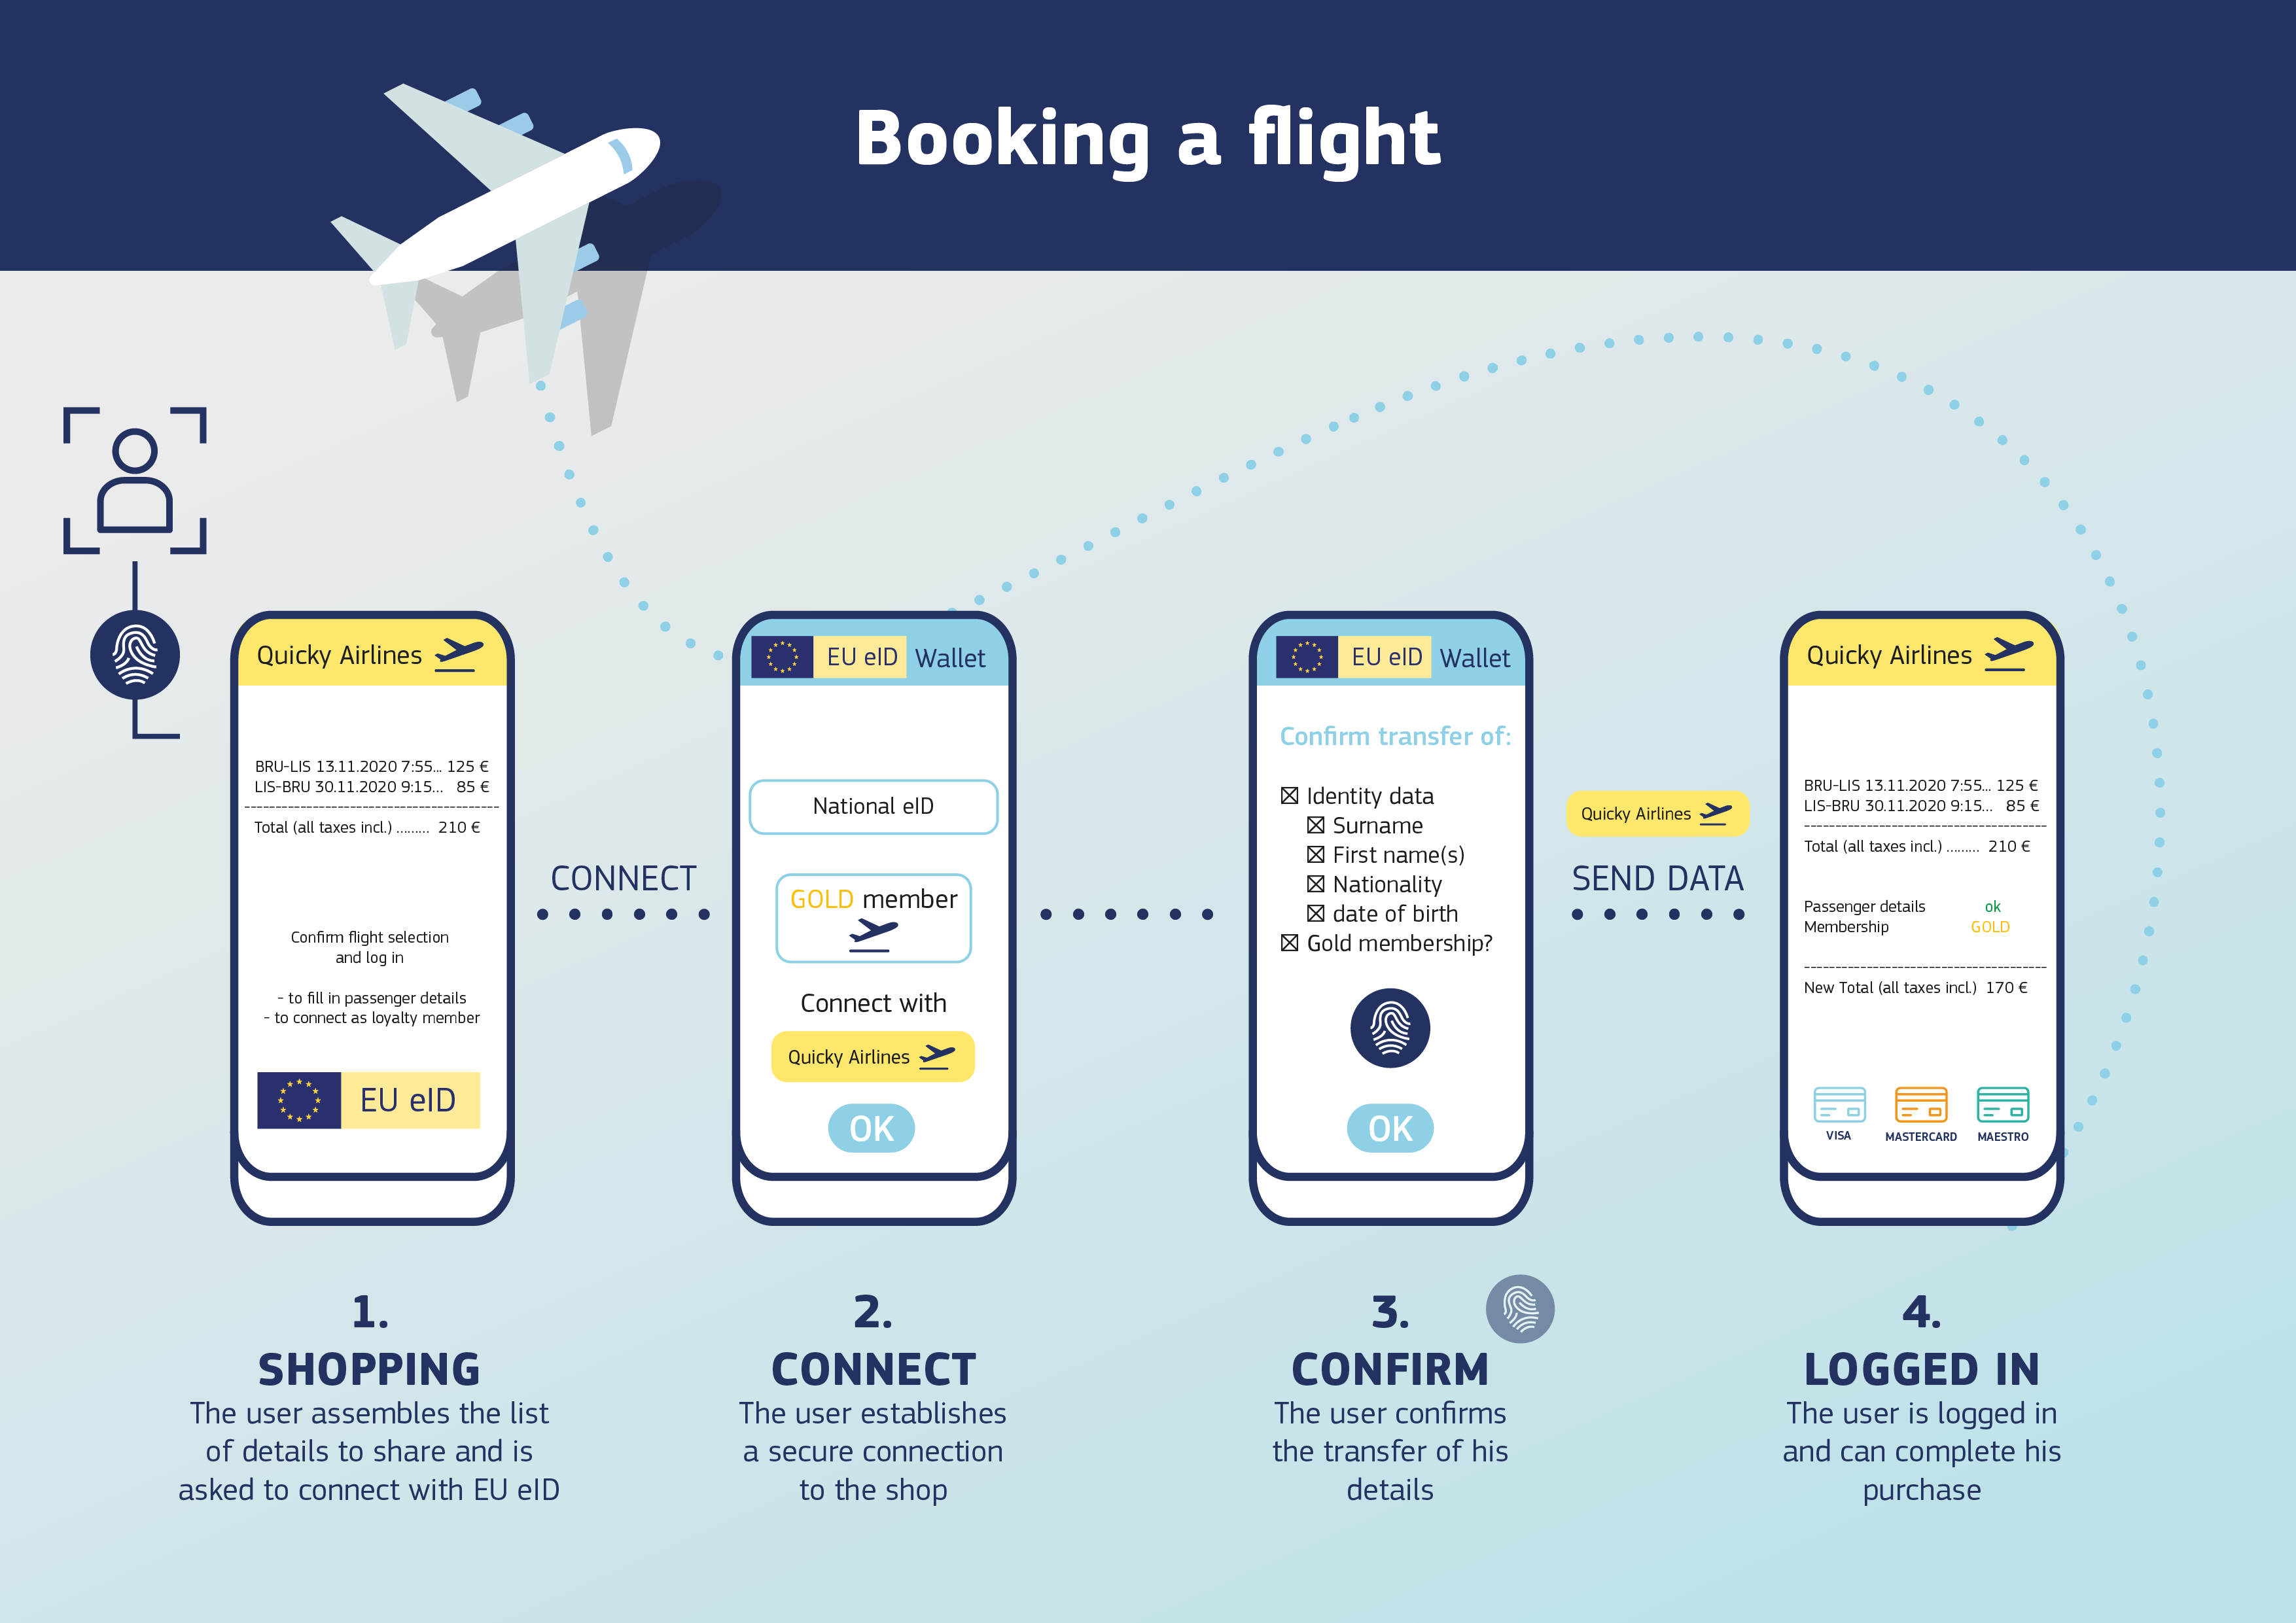 Un infografic care explică modul de utilizare a eID-ului pentru rezervarea unui zbor – conectați-vă cu eID și transferați detaliile cu ușurință